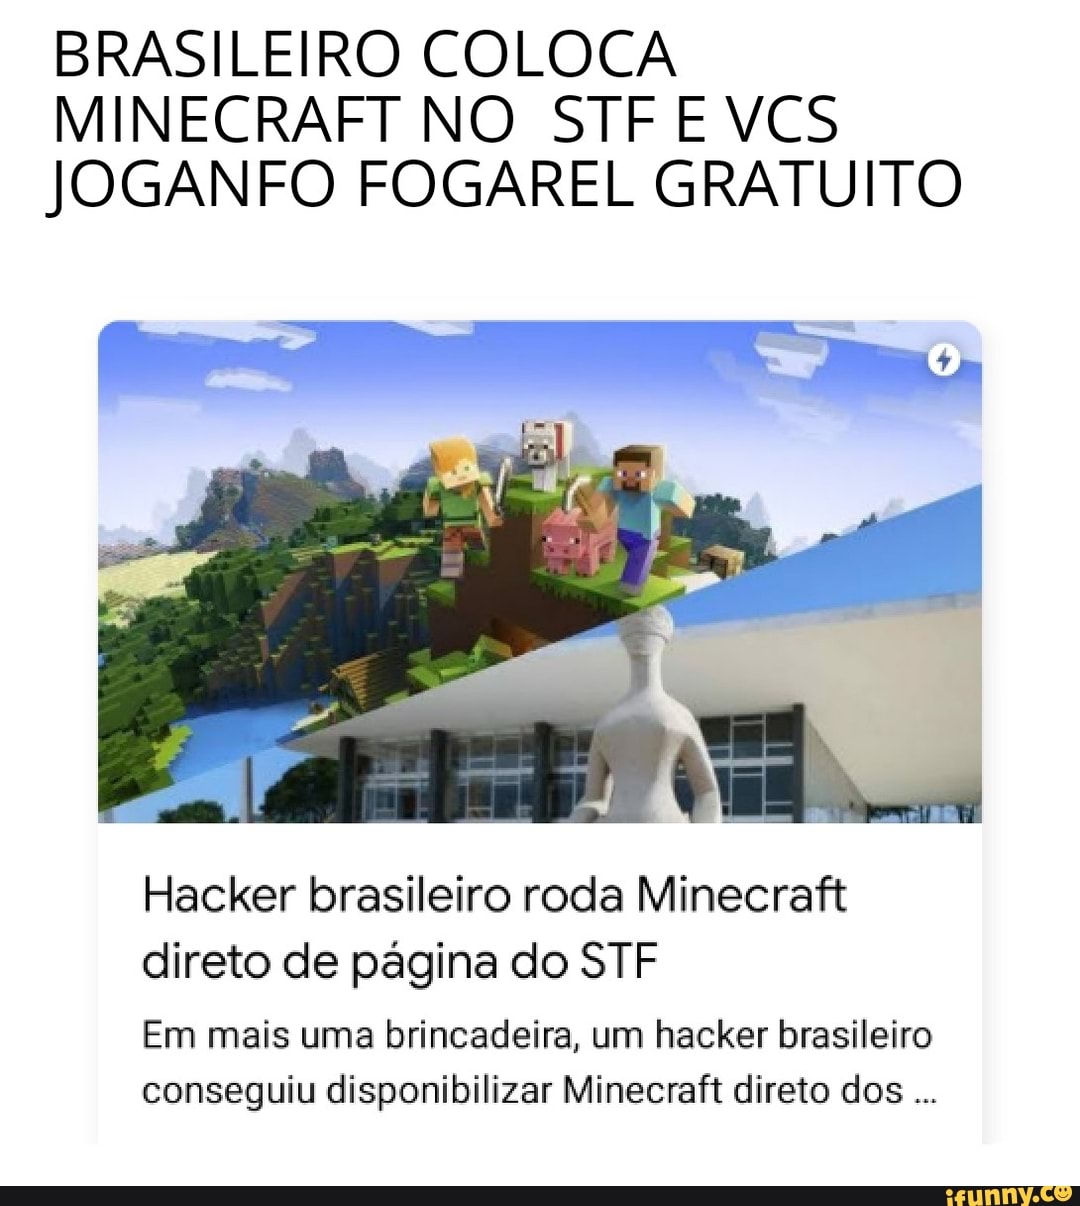 Hacker brasileiro roda Minecraft direto de página do STF